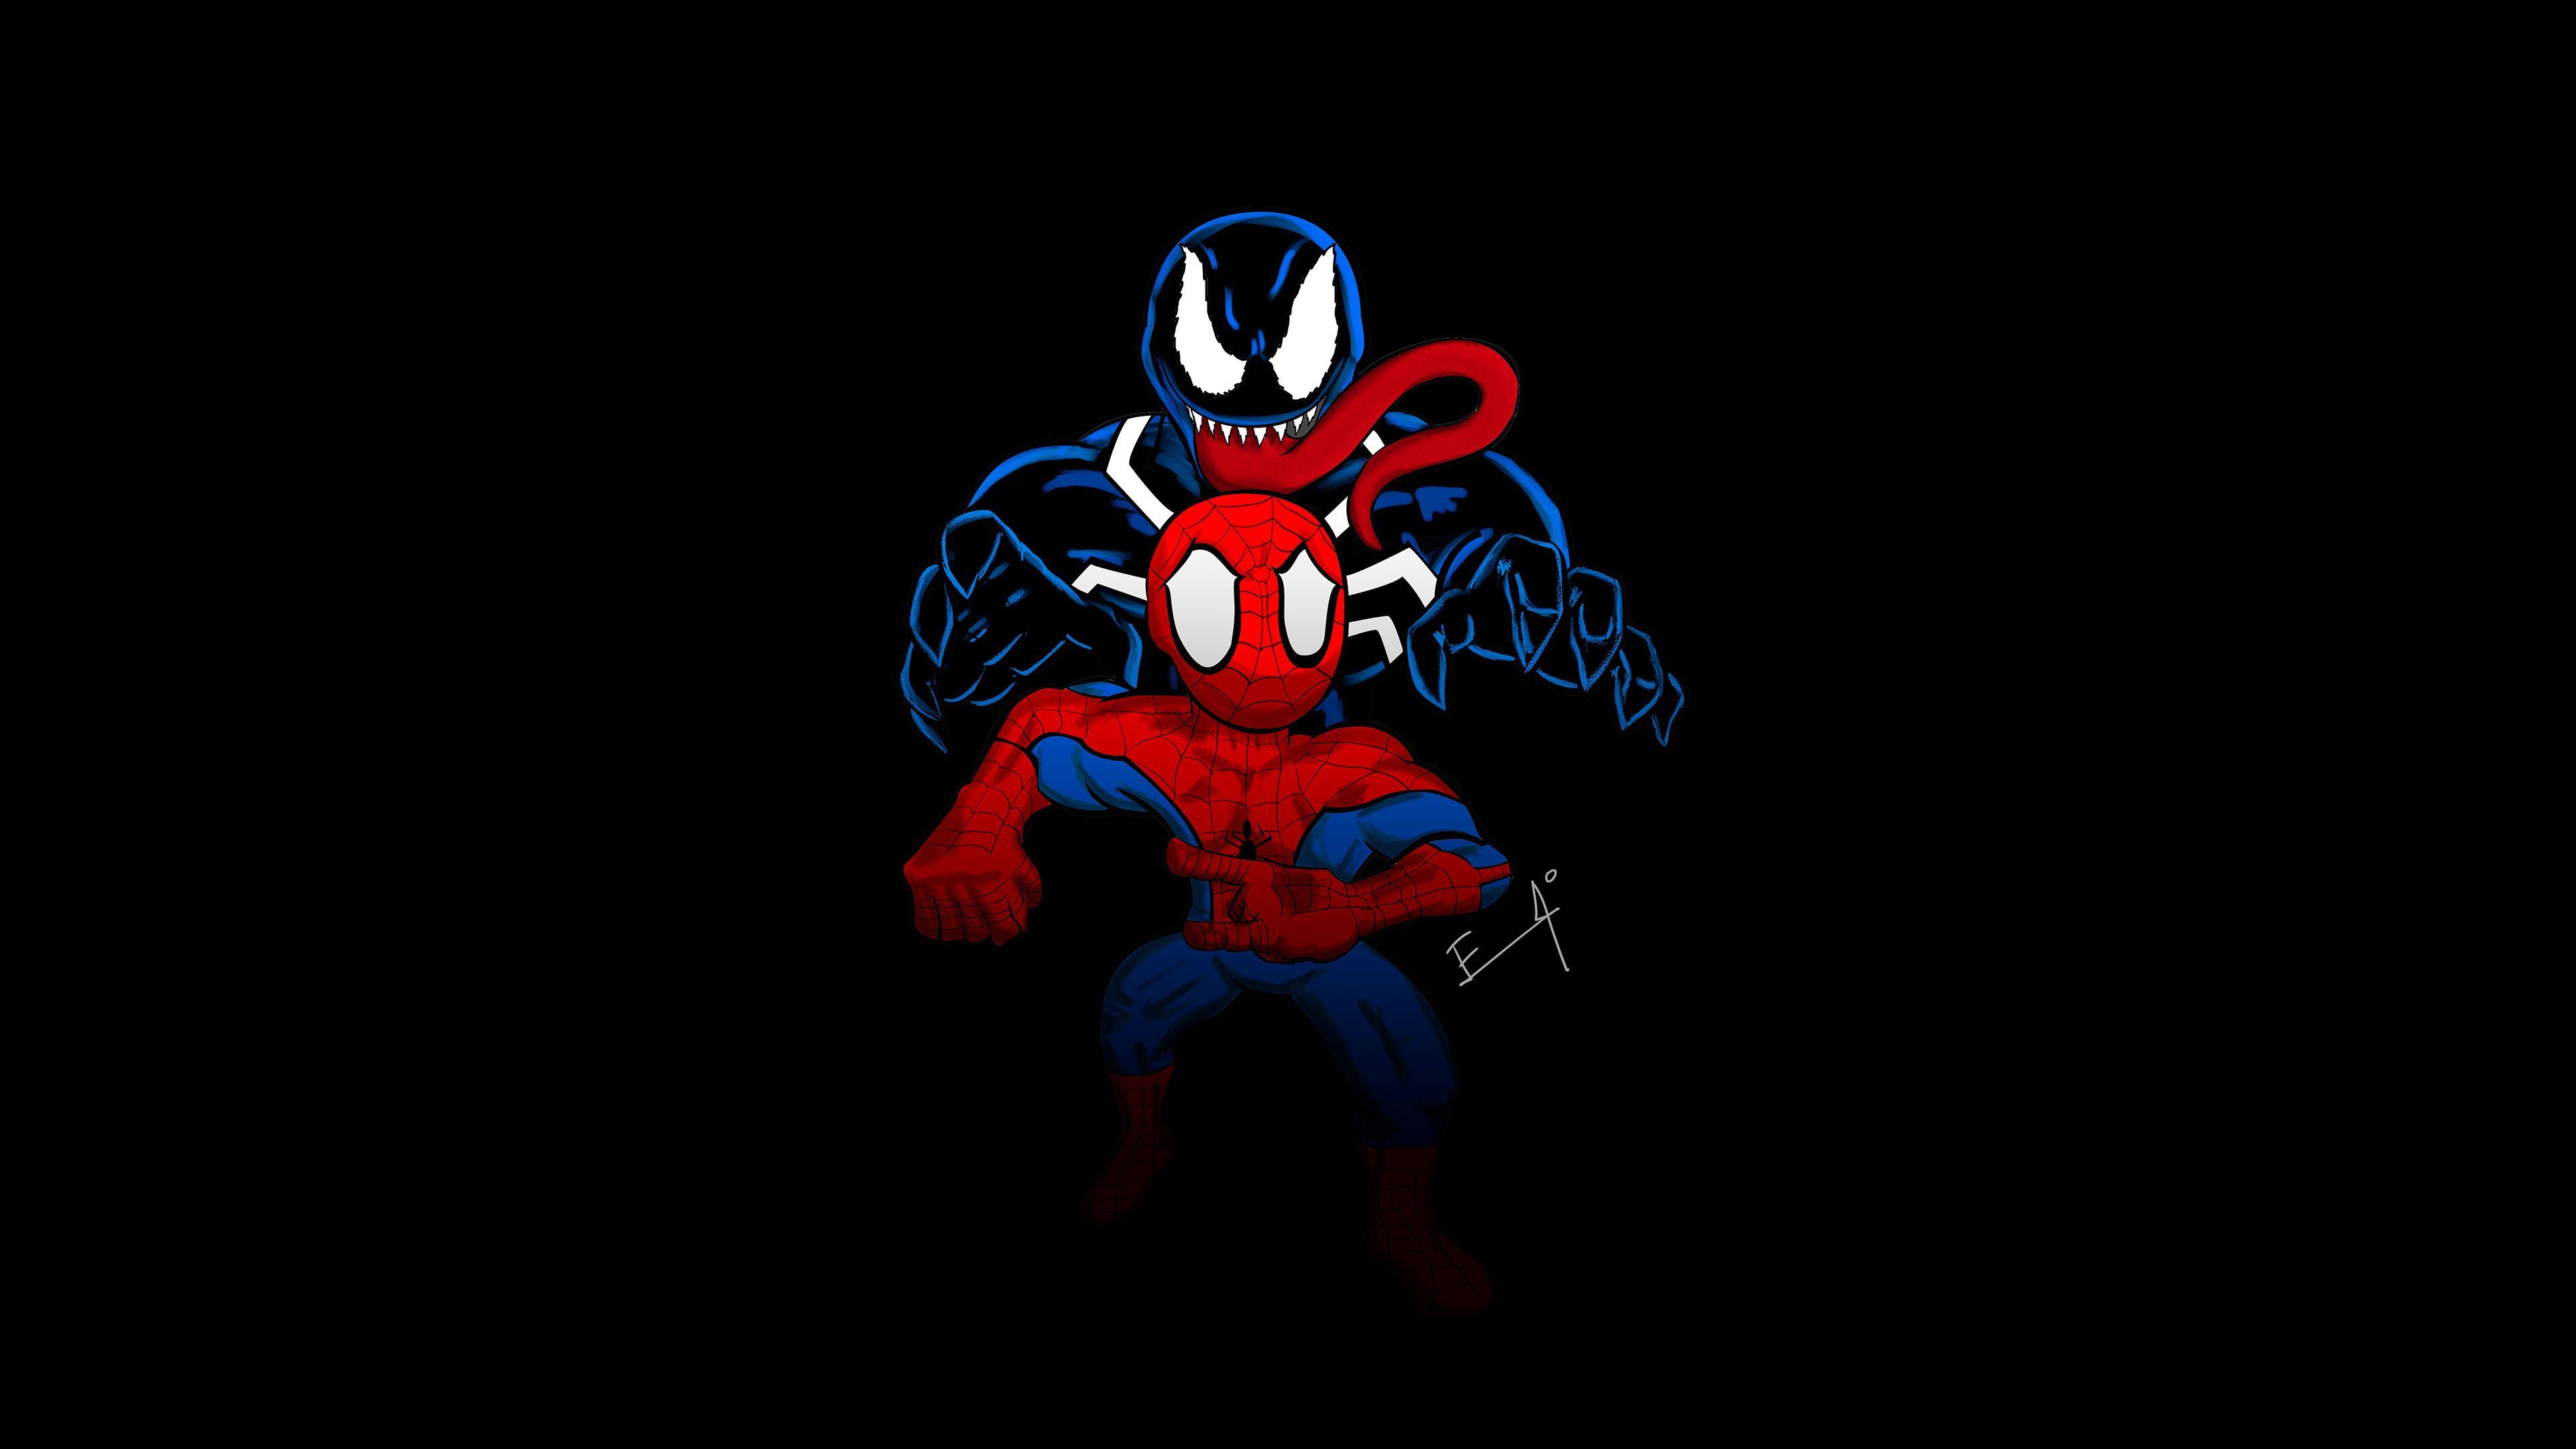 Little Spider Man And Venom 4k Venom wallpapers, superheroes wallpapers, spiderman wallpapers, hd